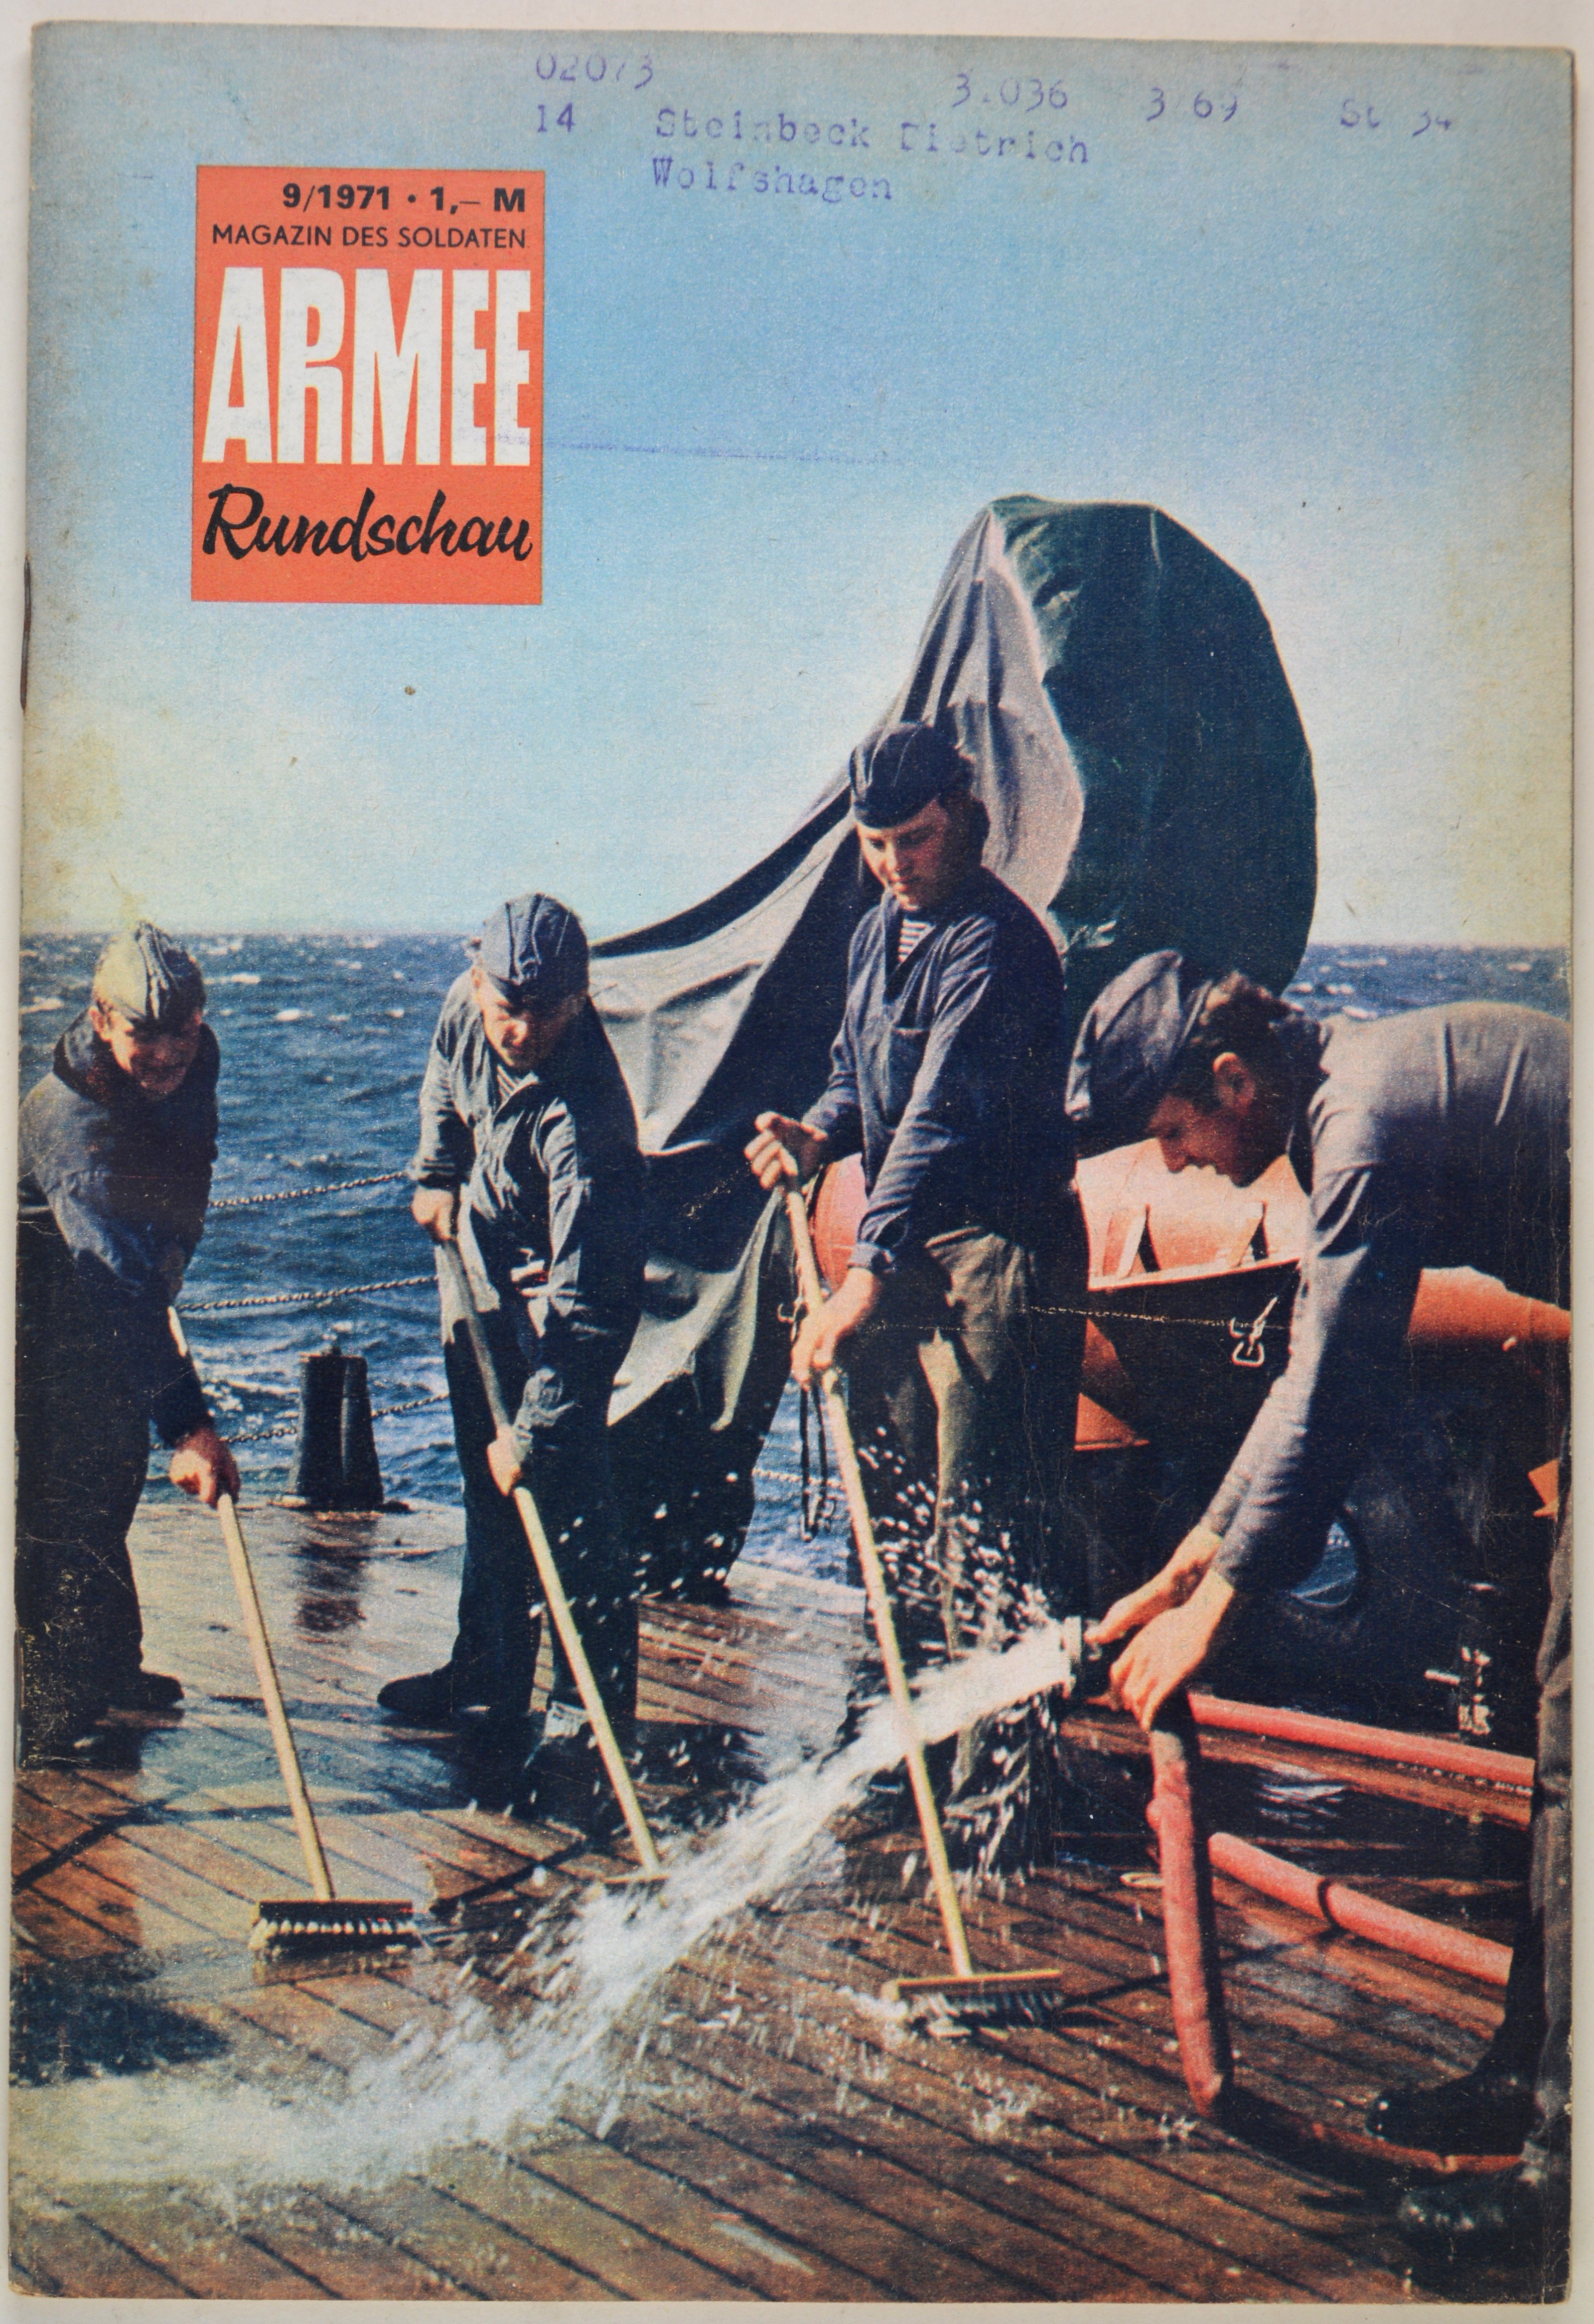 Armeerundschau - Magazin des Soldaten (1971), Heft 9 (DDR Geschichtsmuseum im Dokumentationszentrum Perleberg CC BY-SA)